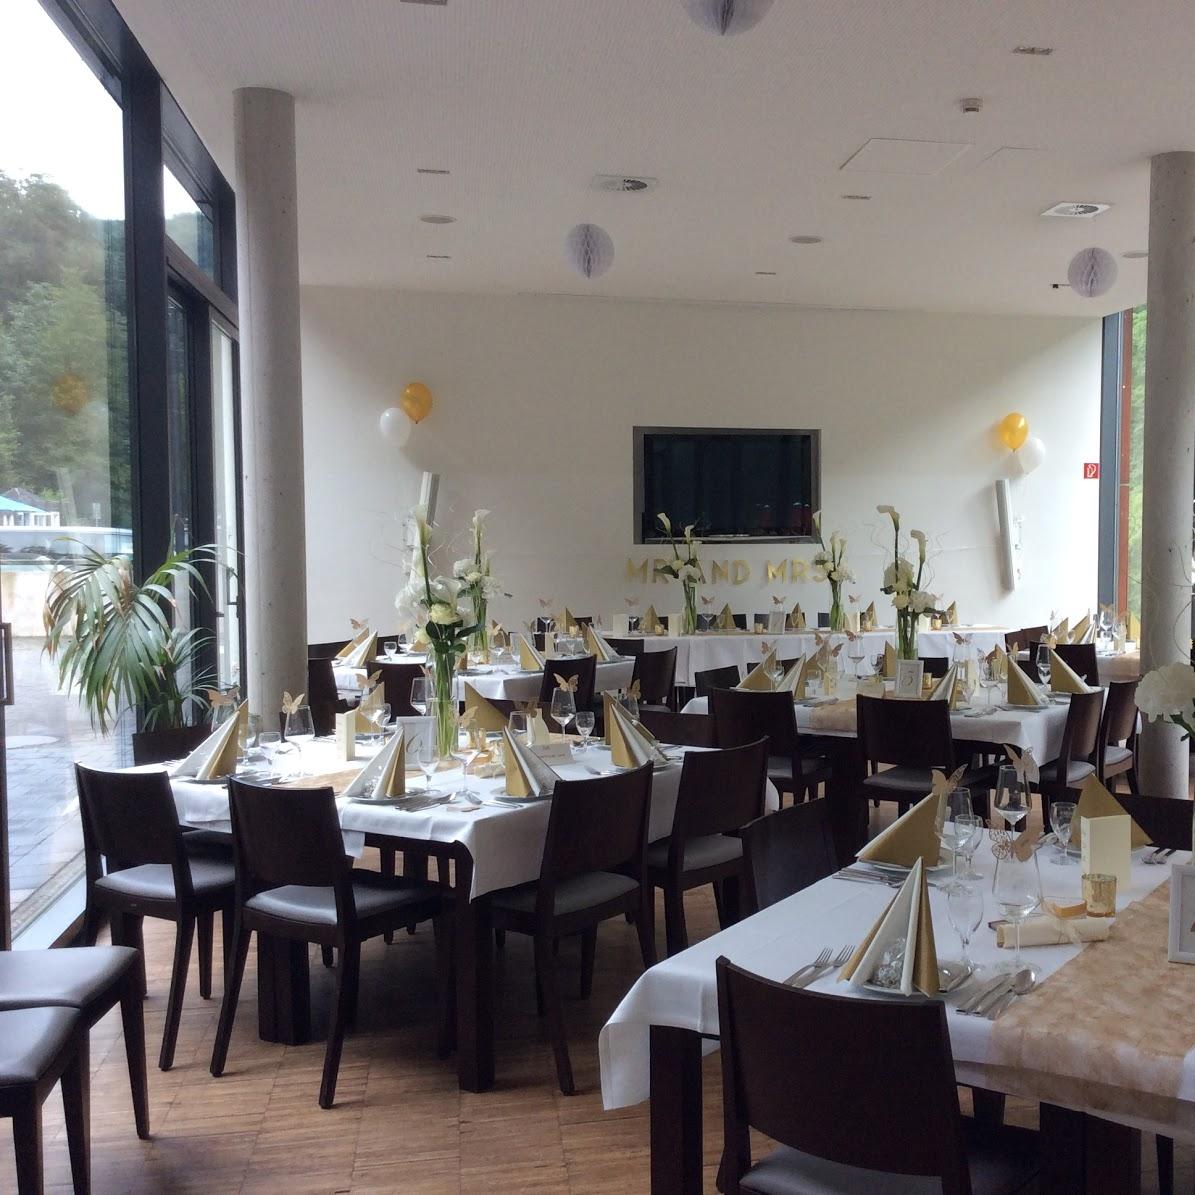 Restaurant "Haus Müngsten" in Solingen